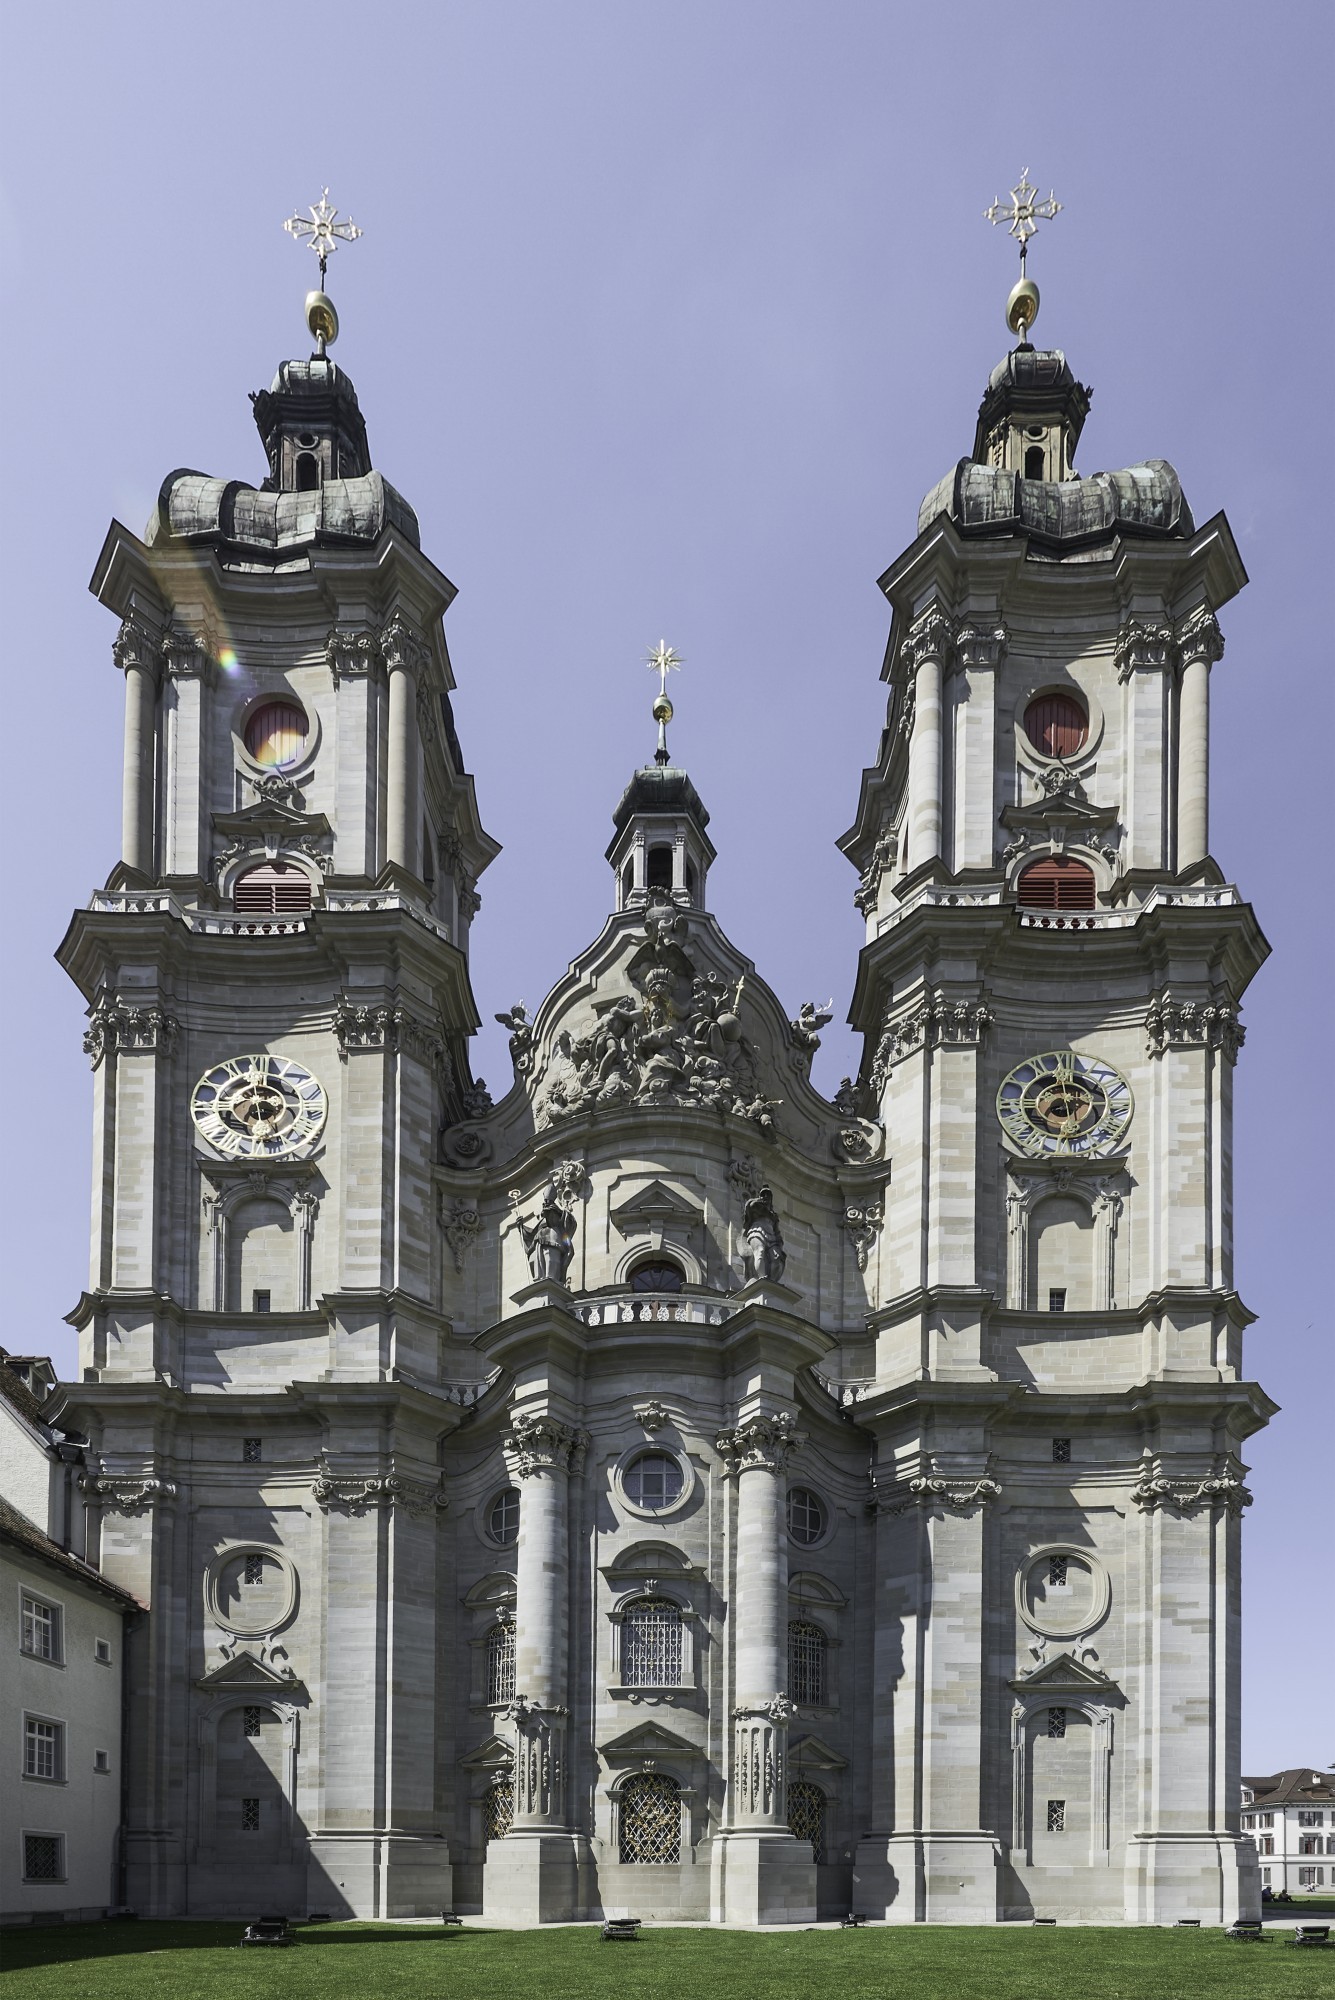 Kathedrale St. Gallen